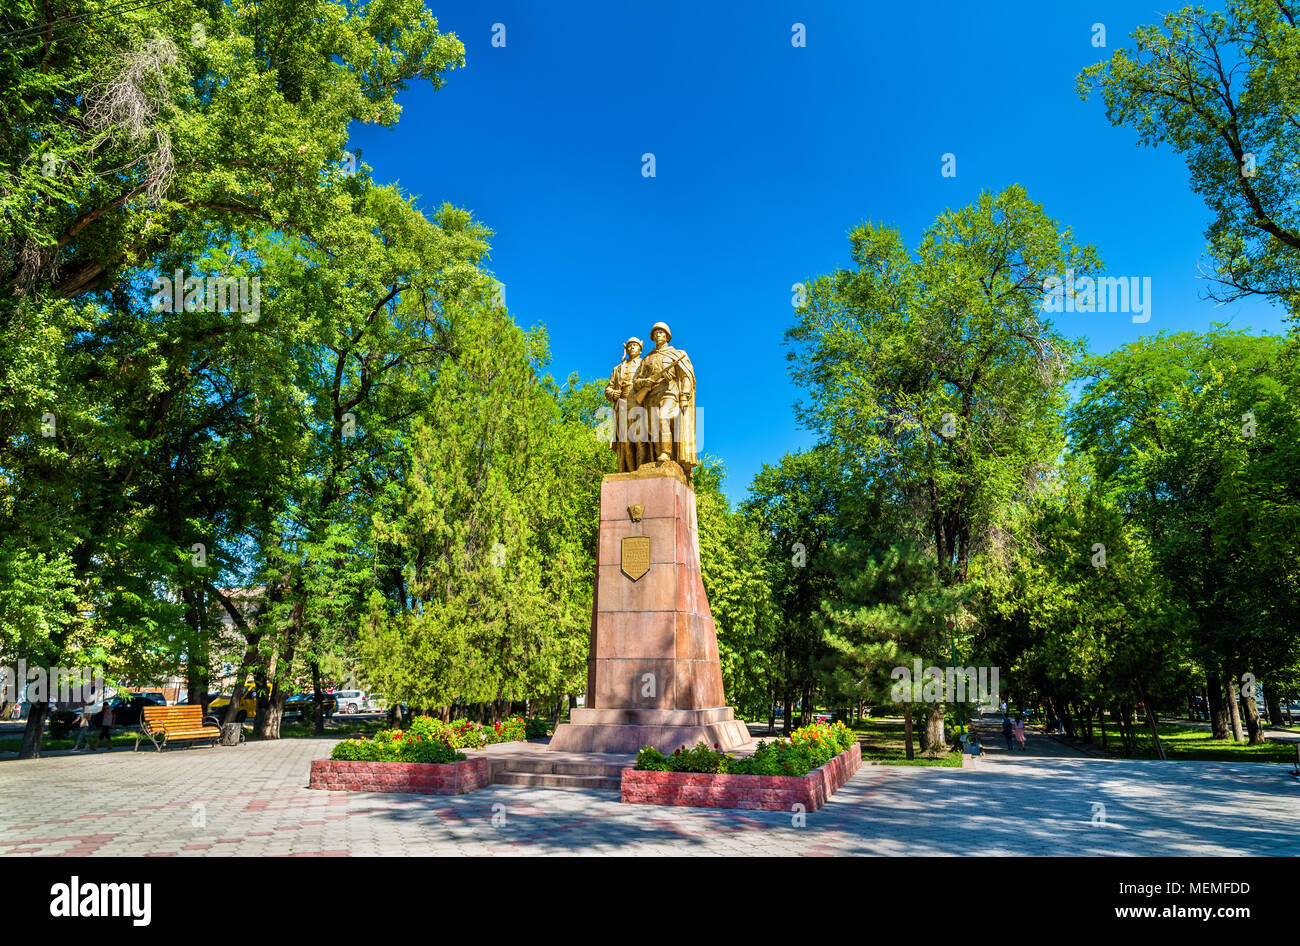 Monument to the heroes of Komsomol in Bishkek - Kyrgyzstan Stock Photo